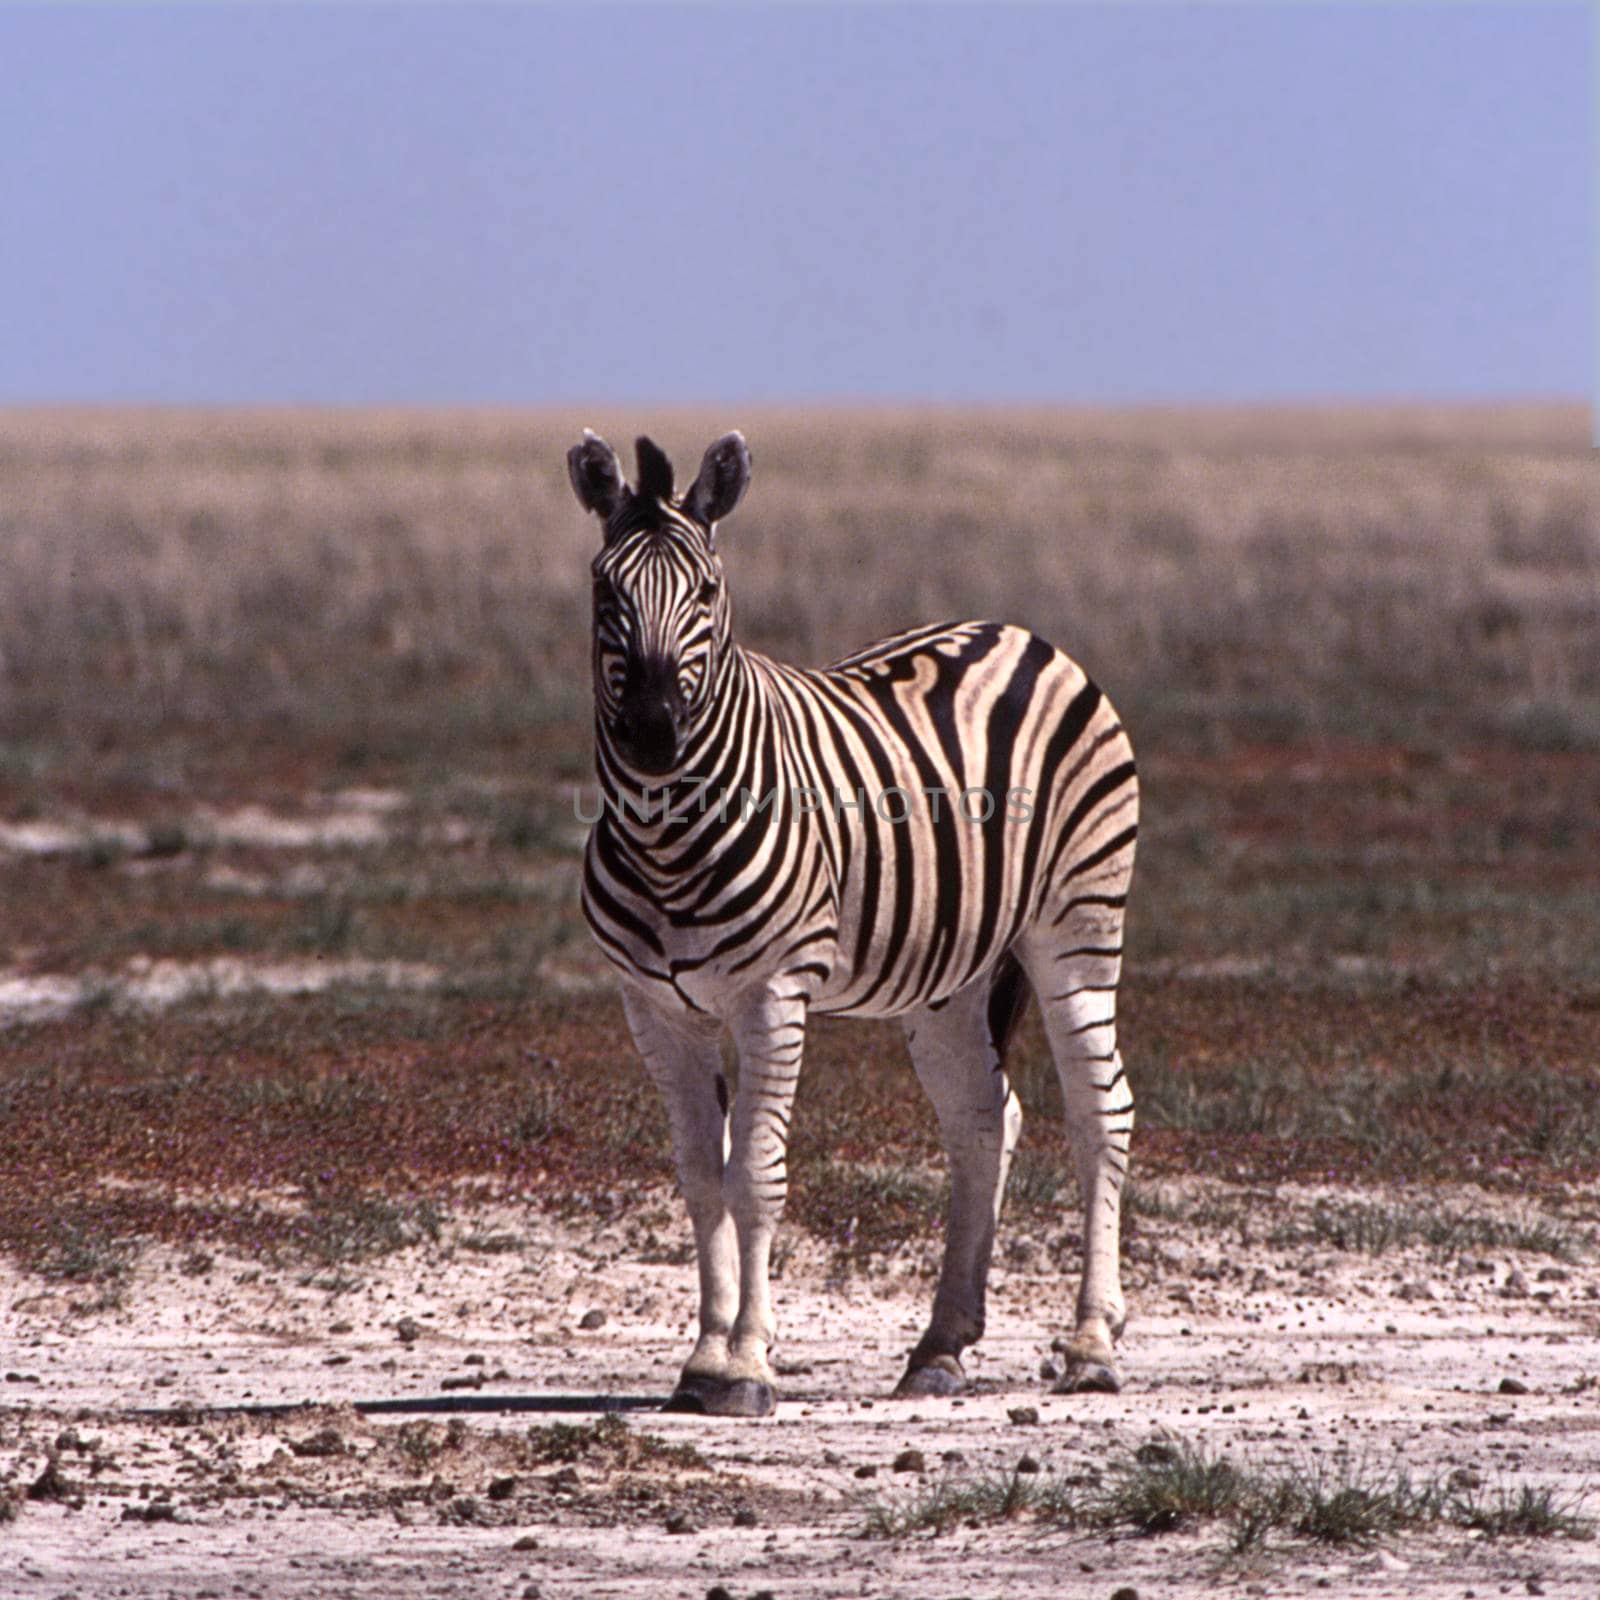 plains zebra (equus burchellii), etosha national park, namibia, africa